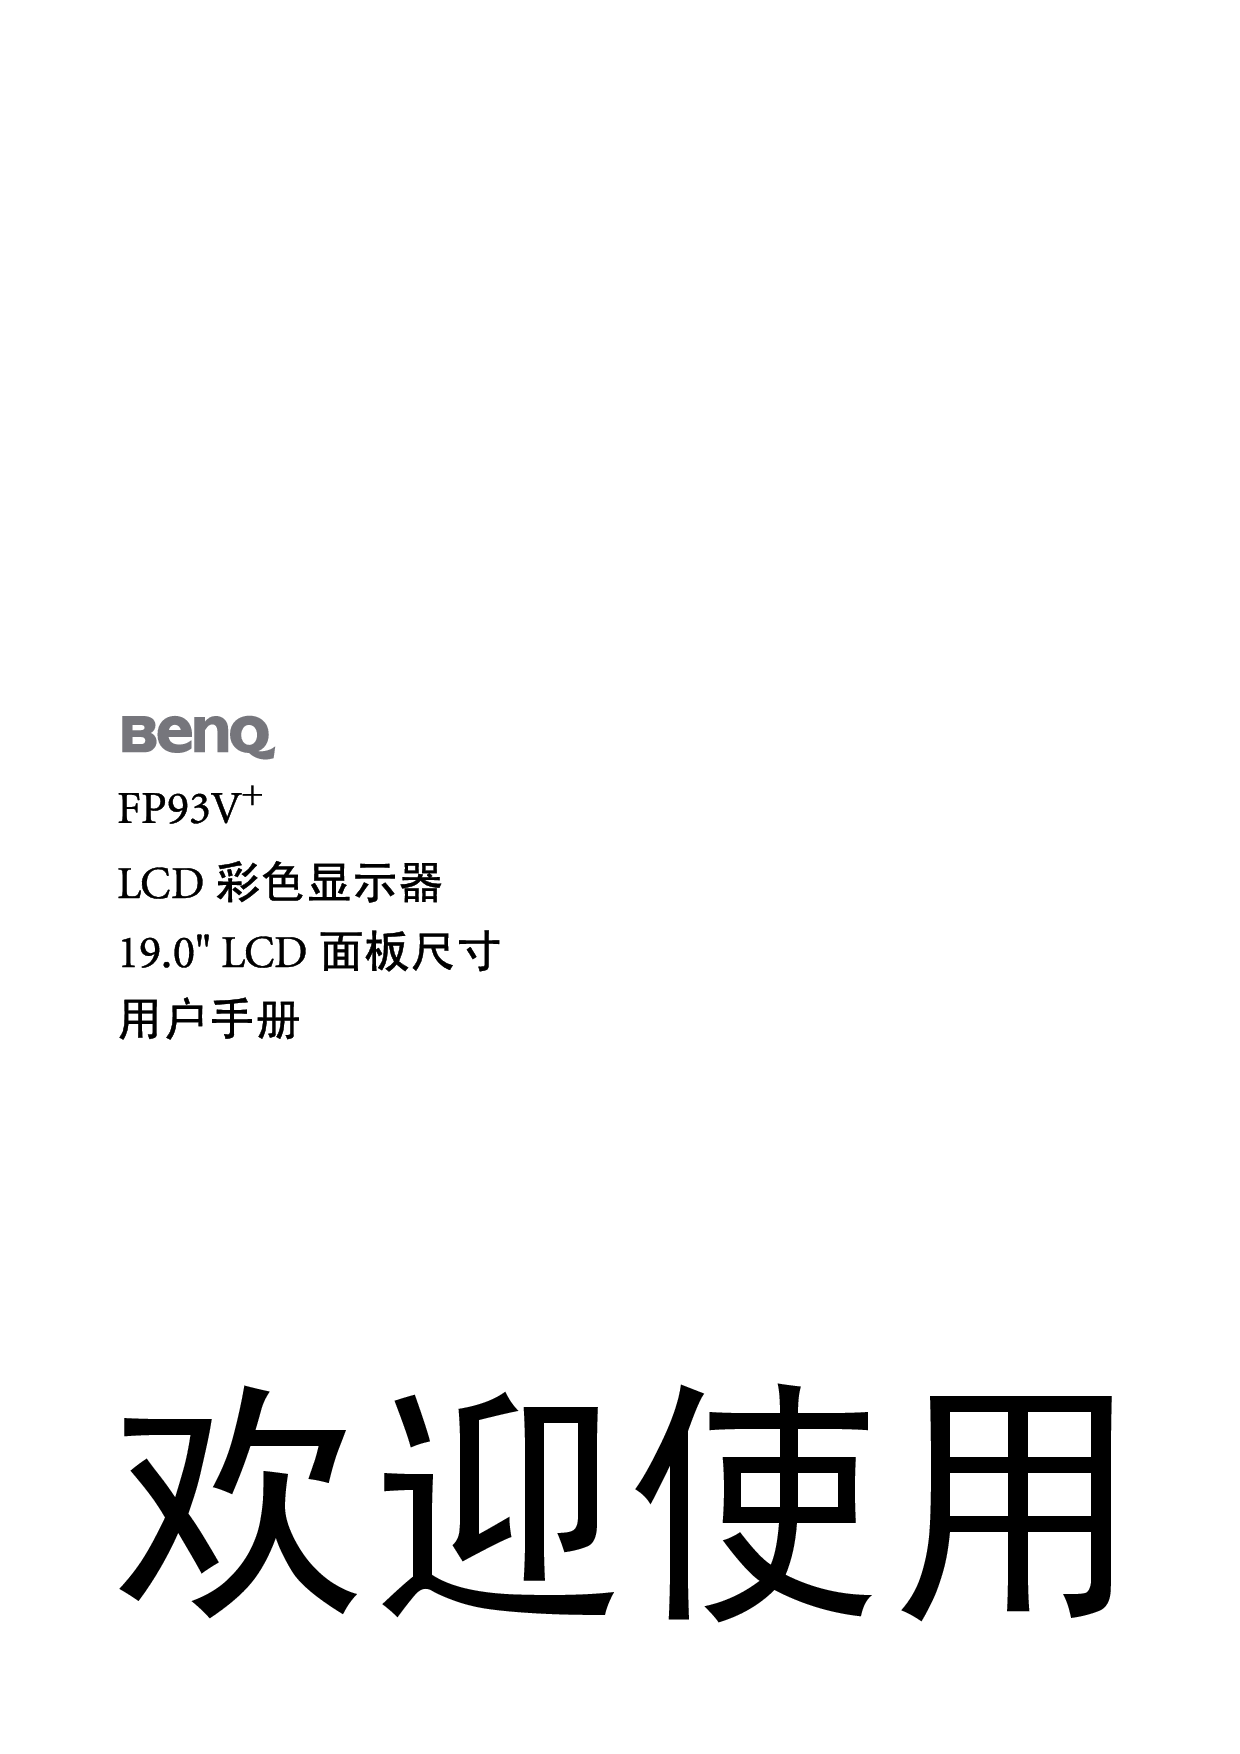 明基 Benq FP93V+ 使用手册 封面